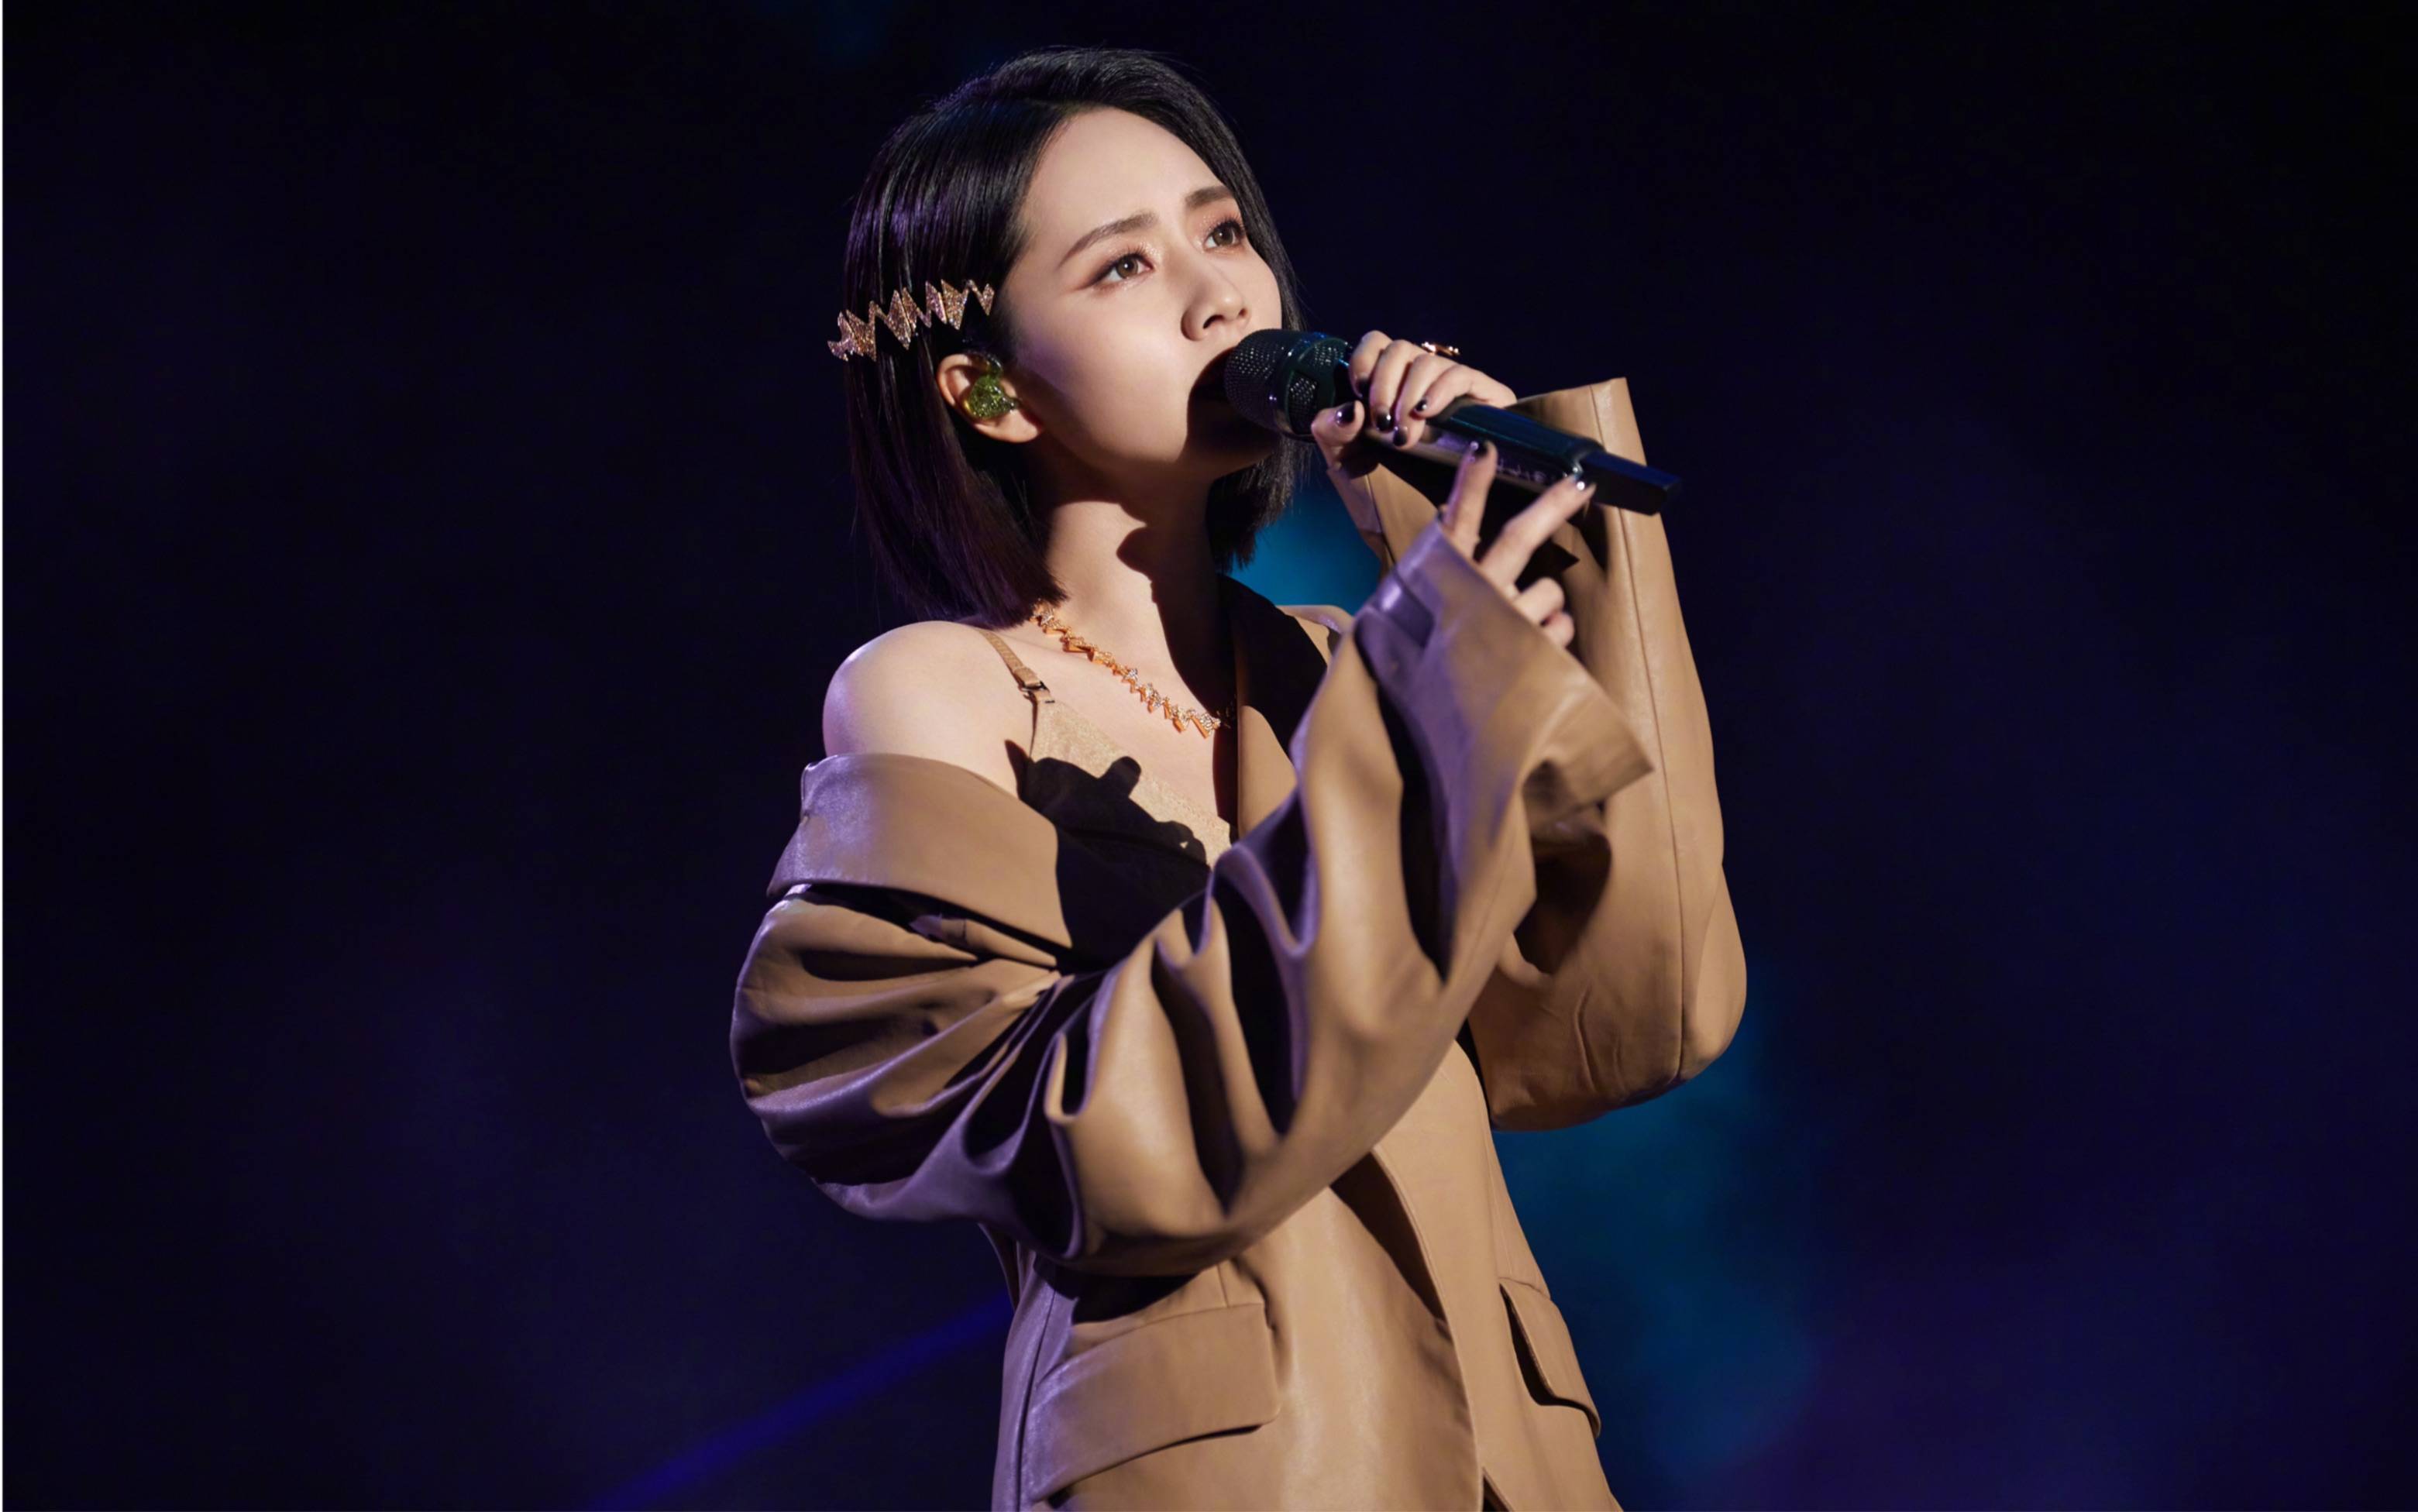 刘惜君,华语金曲奖最佳国语女歌手,于1988年4月30日在广东省深圳市